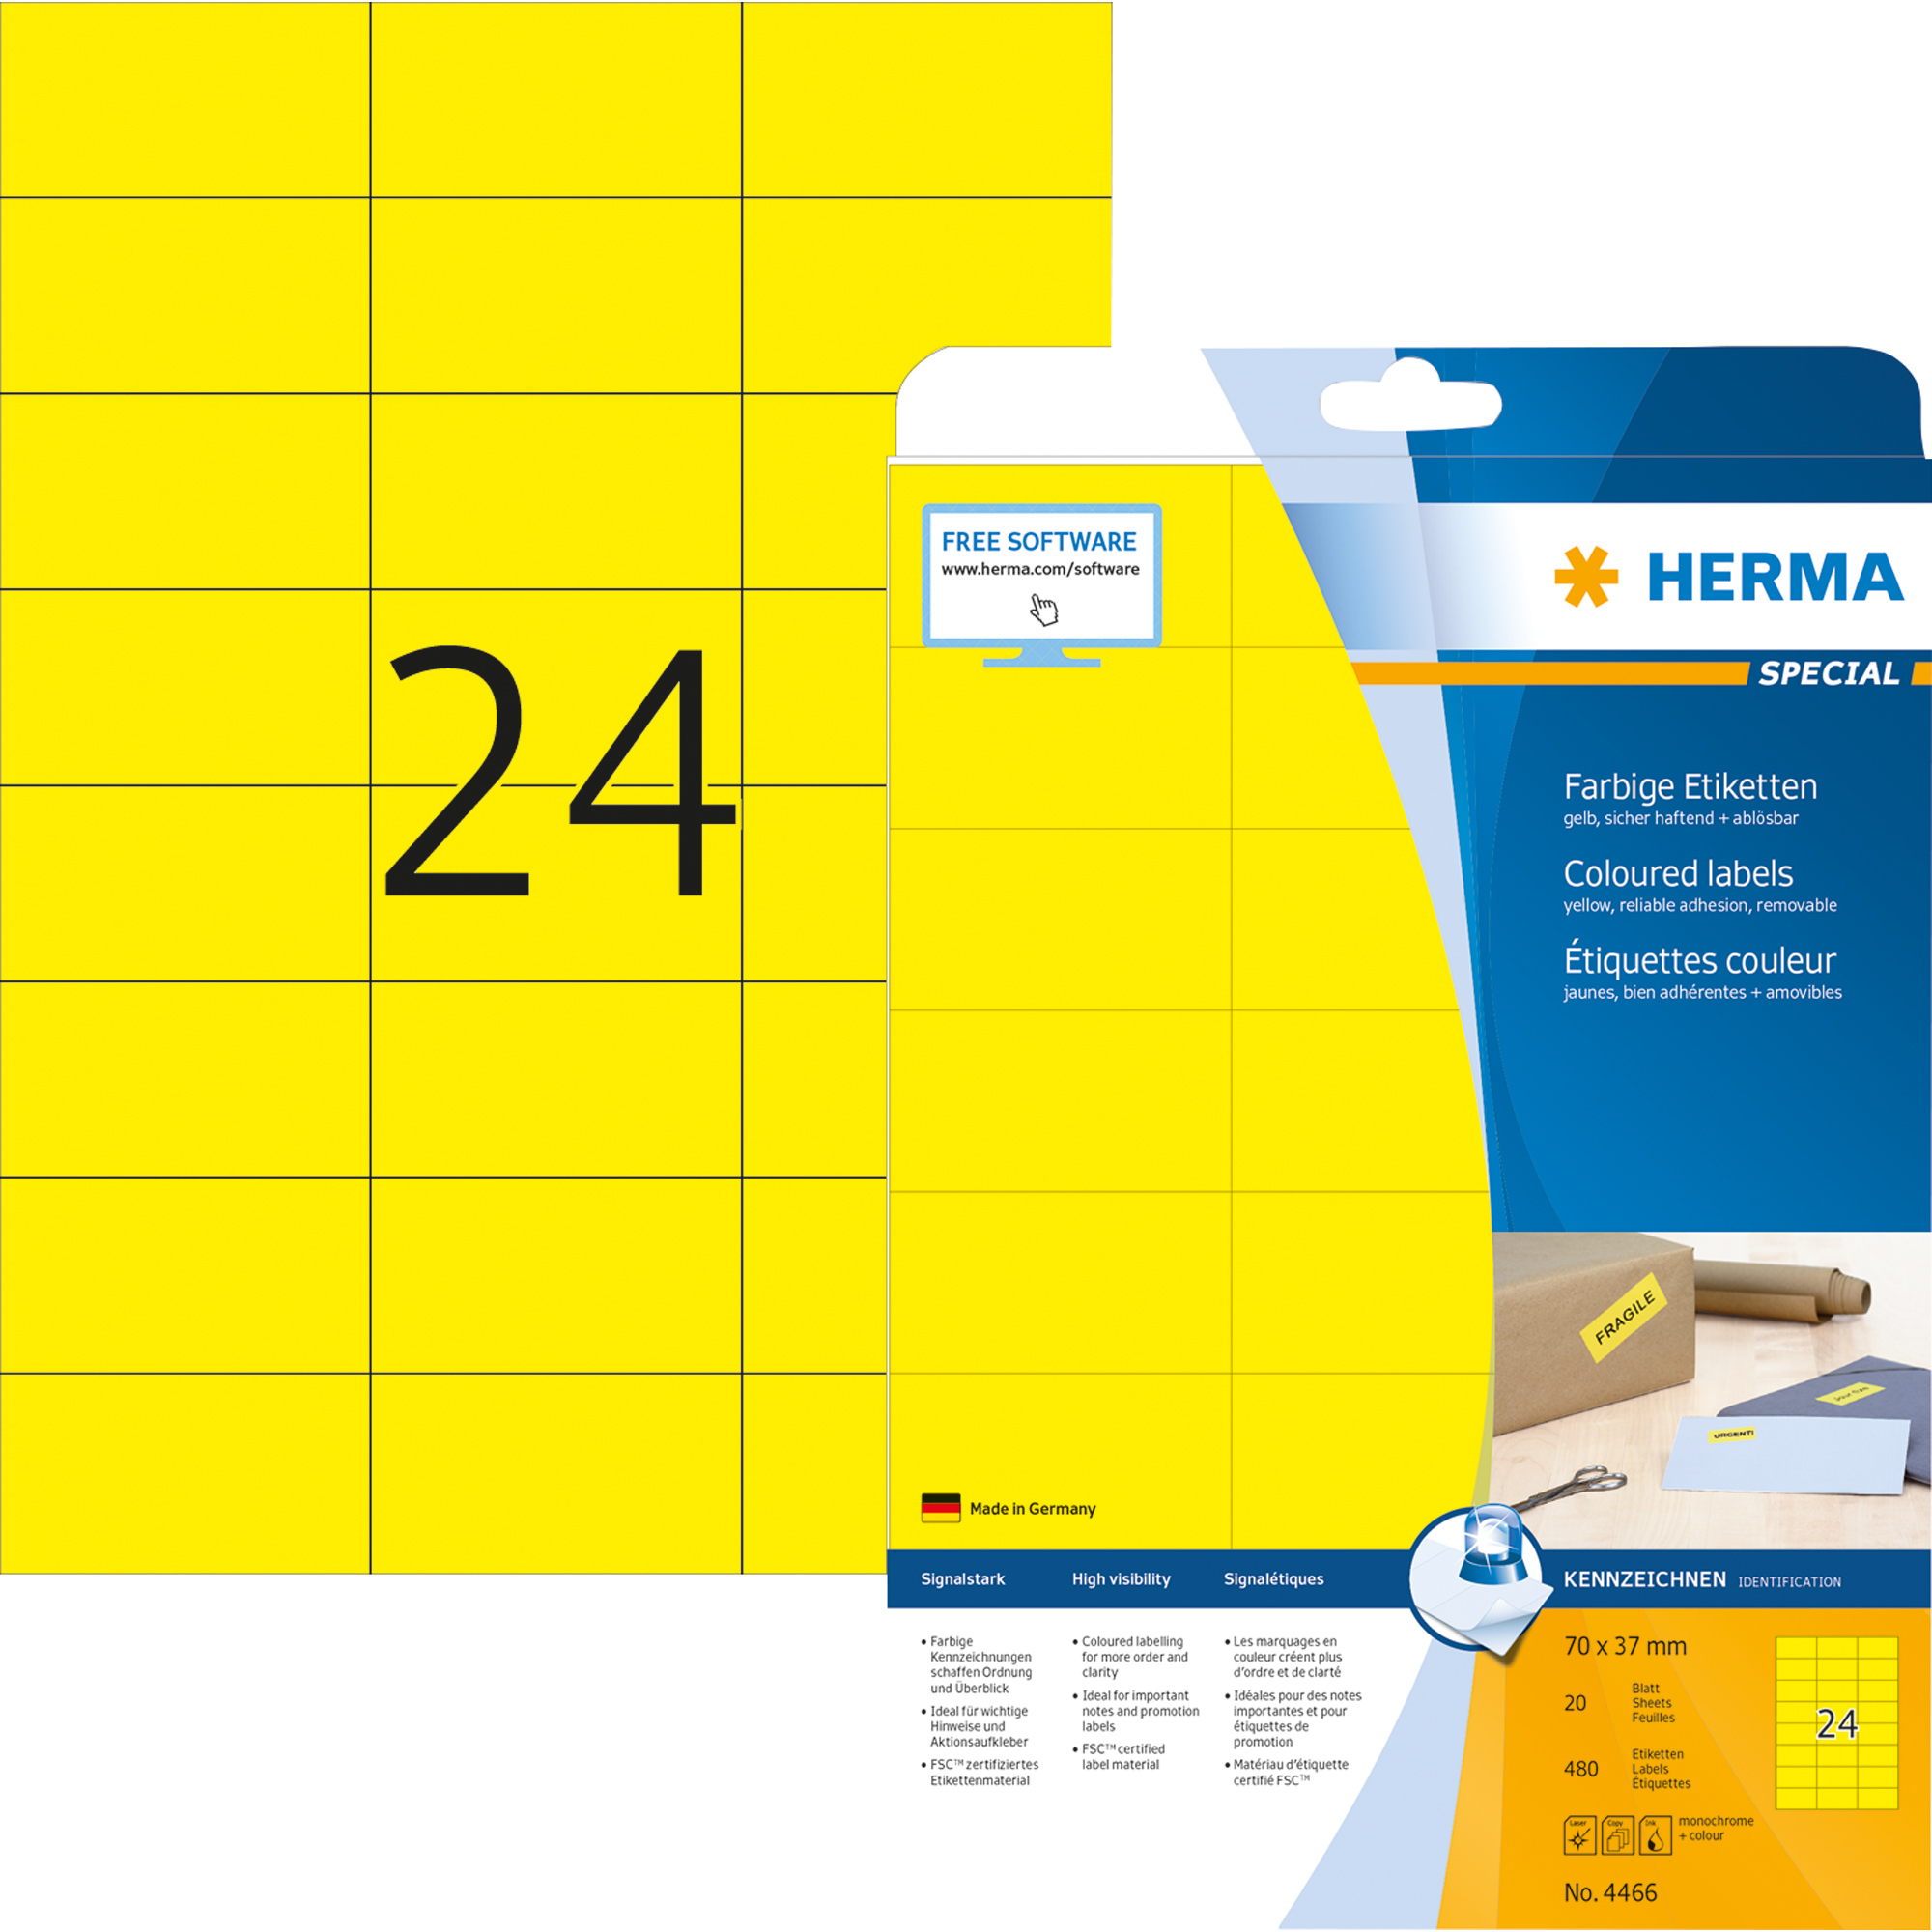 HERMA Universaletikett SPECIAL 70x37 mm 480 Etiketten gelb